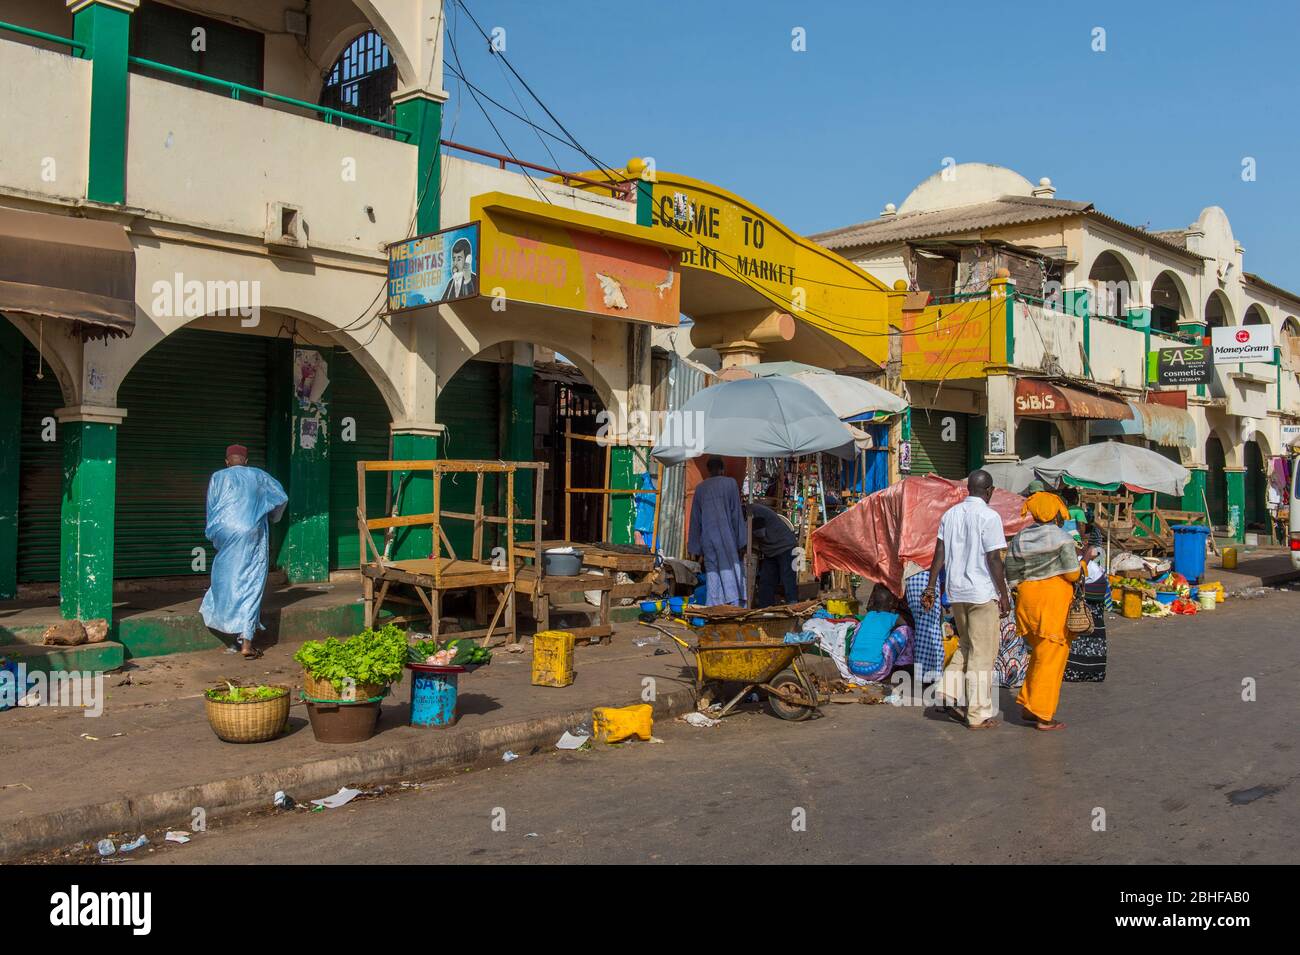 Entrée au marché Albert de Banjul, Gambie. Banque D'Images